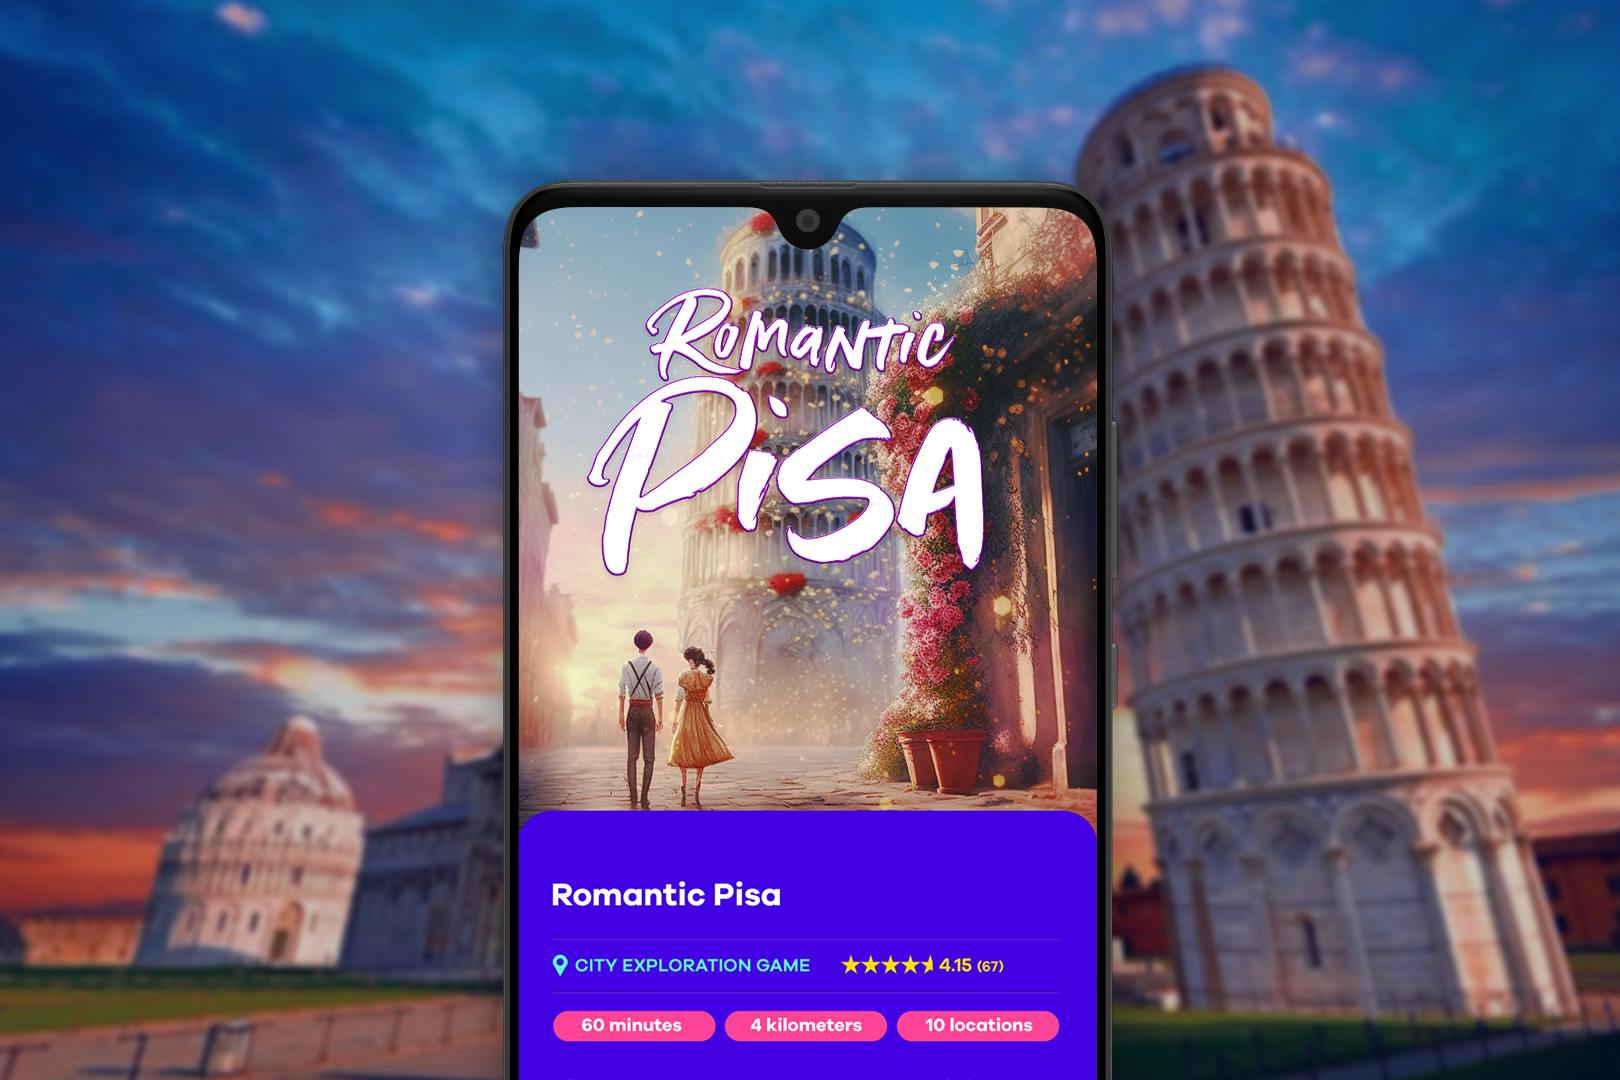 "Romantic Pisa", online exploration game